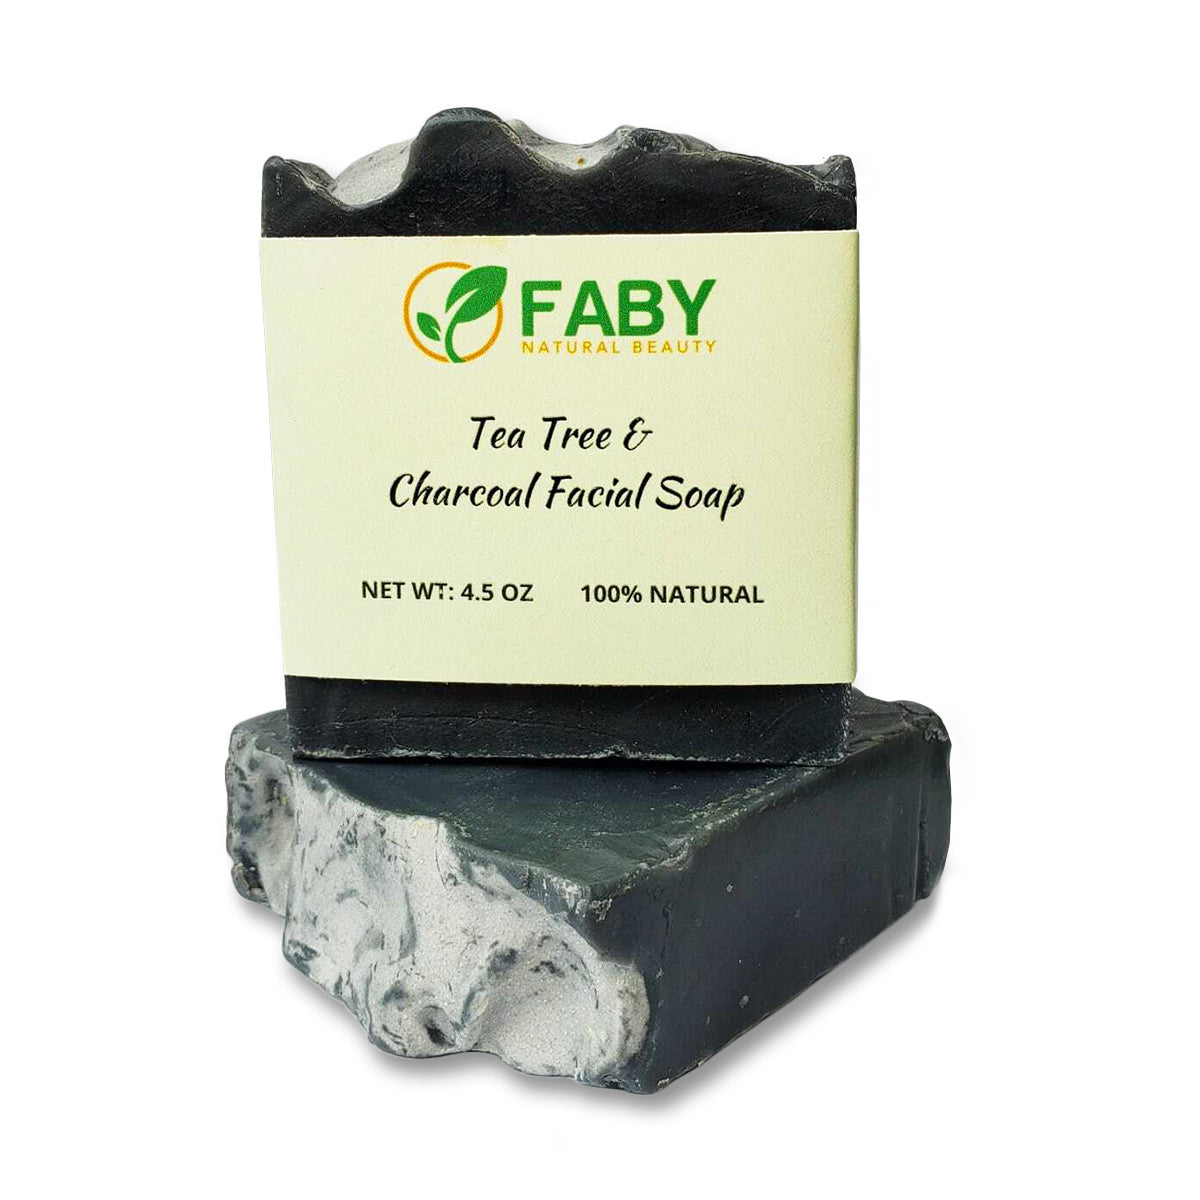 Tea Tree & Charcoal Facial Soap